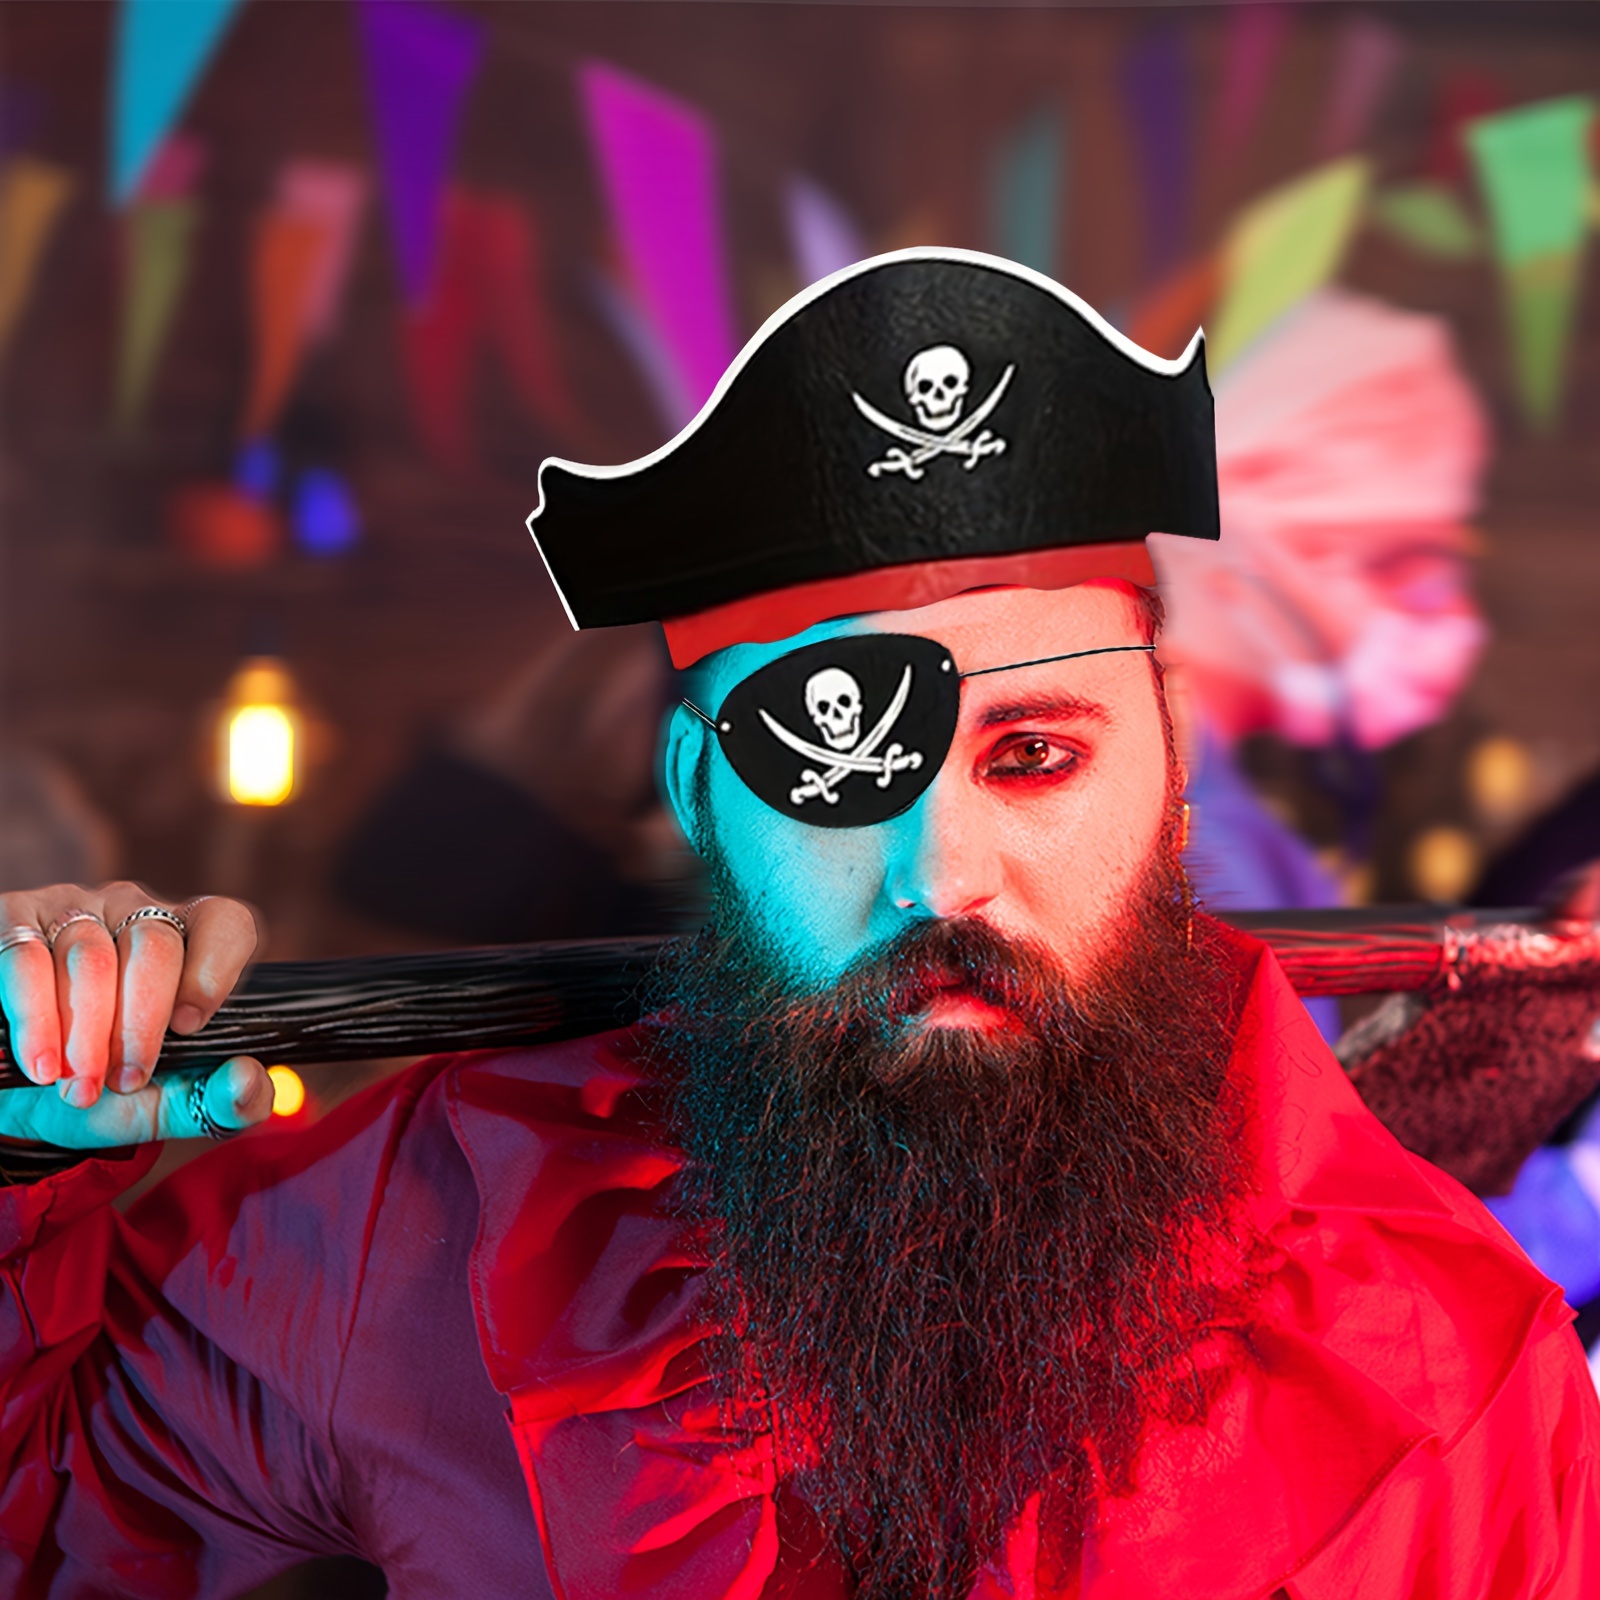 Juego de accesorios para disfraz de pirata de capitán de pirata, sombrero  de pirata, kit de accesorios de pirata, juego de roles